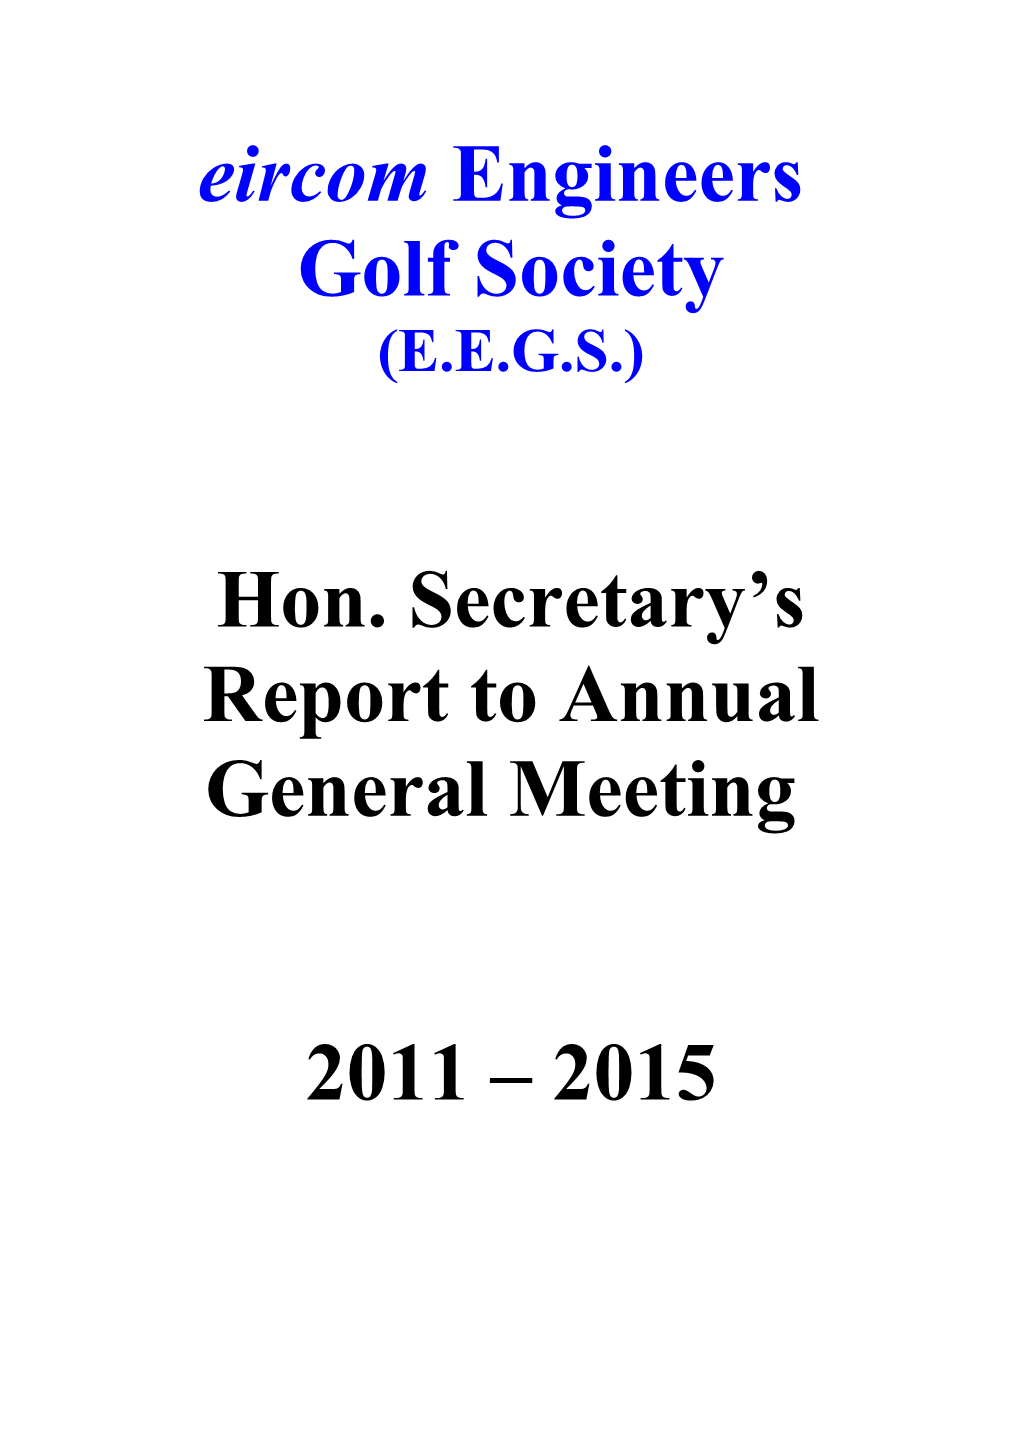 Hon. Secretary S Report to A.G.M. 1996